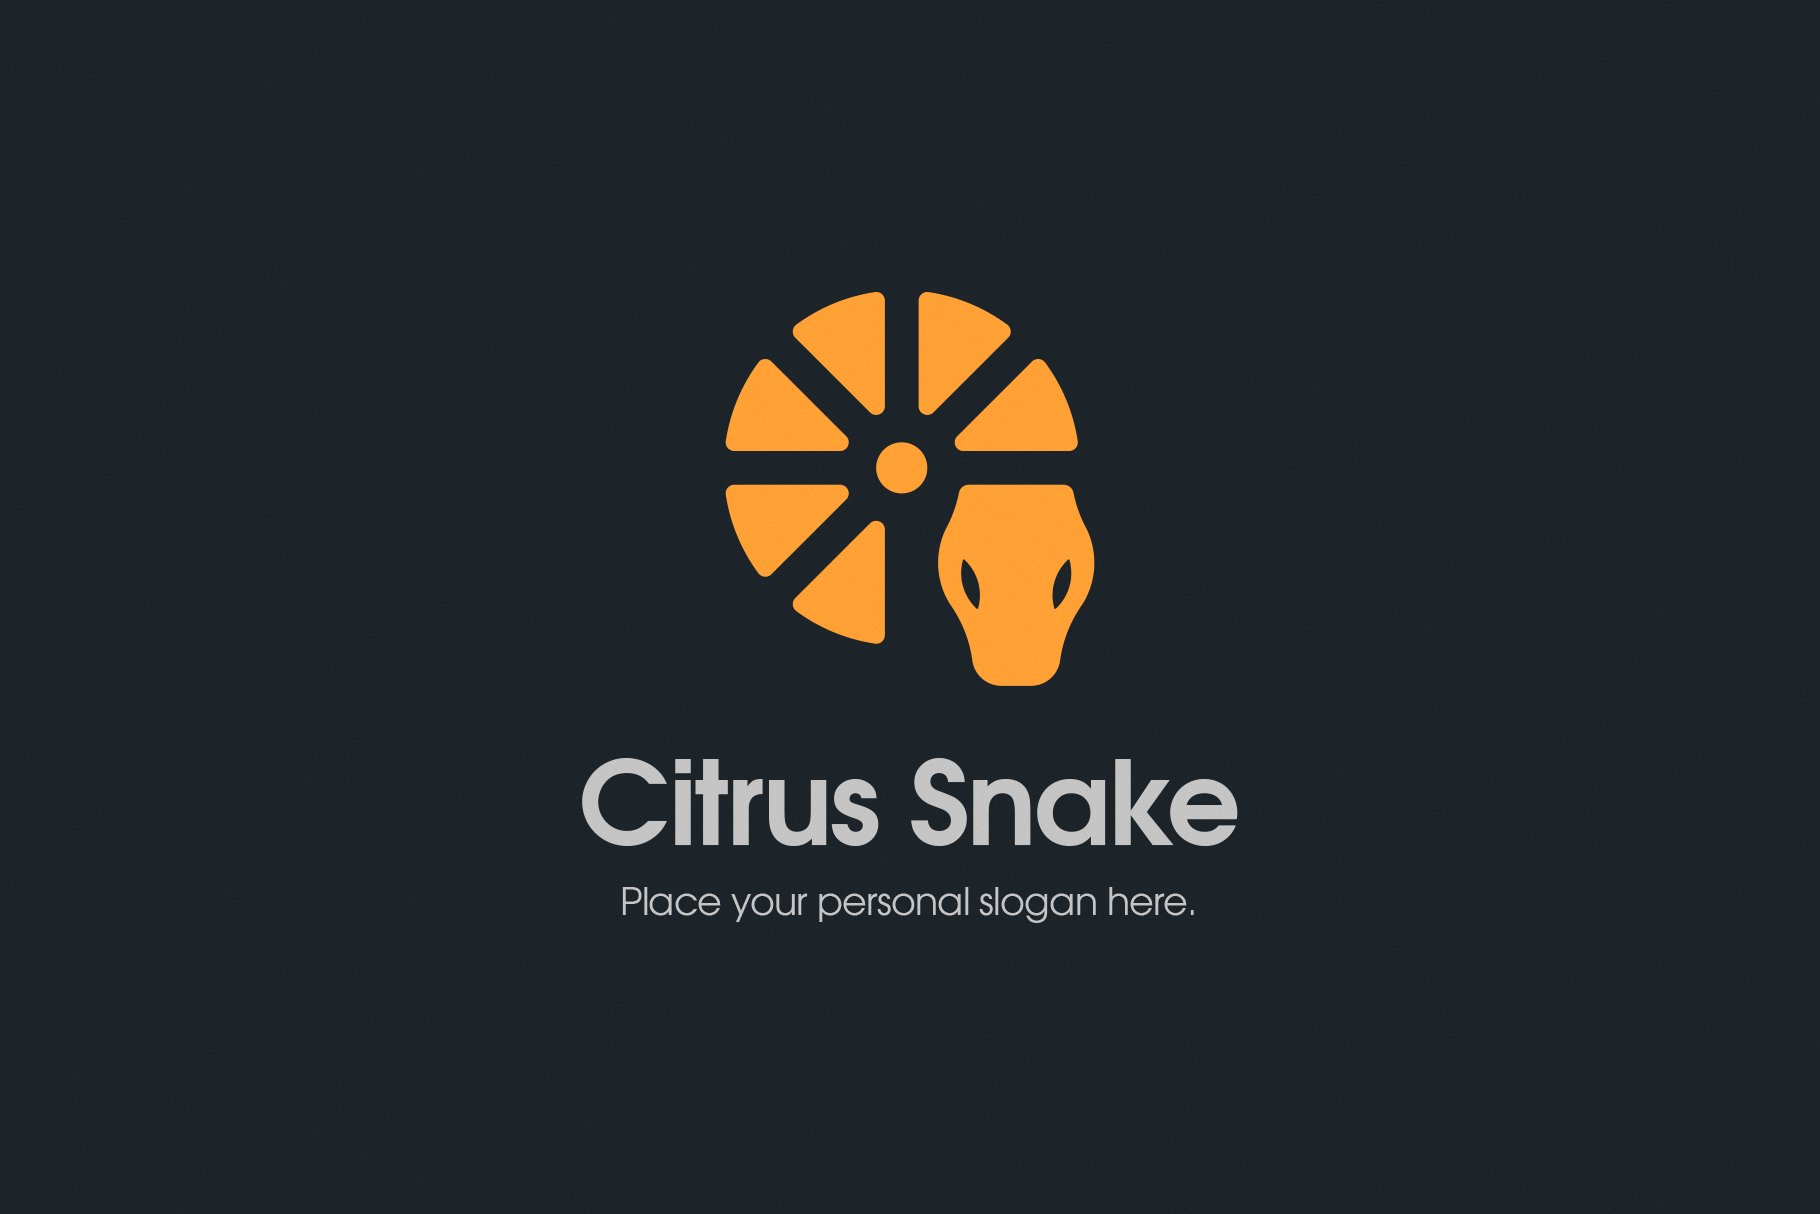 Lemon Citrus Snake Logo preview image.